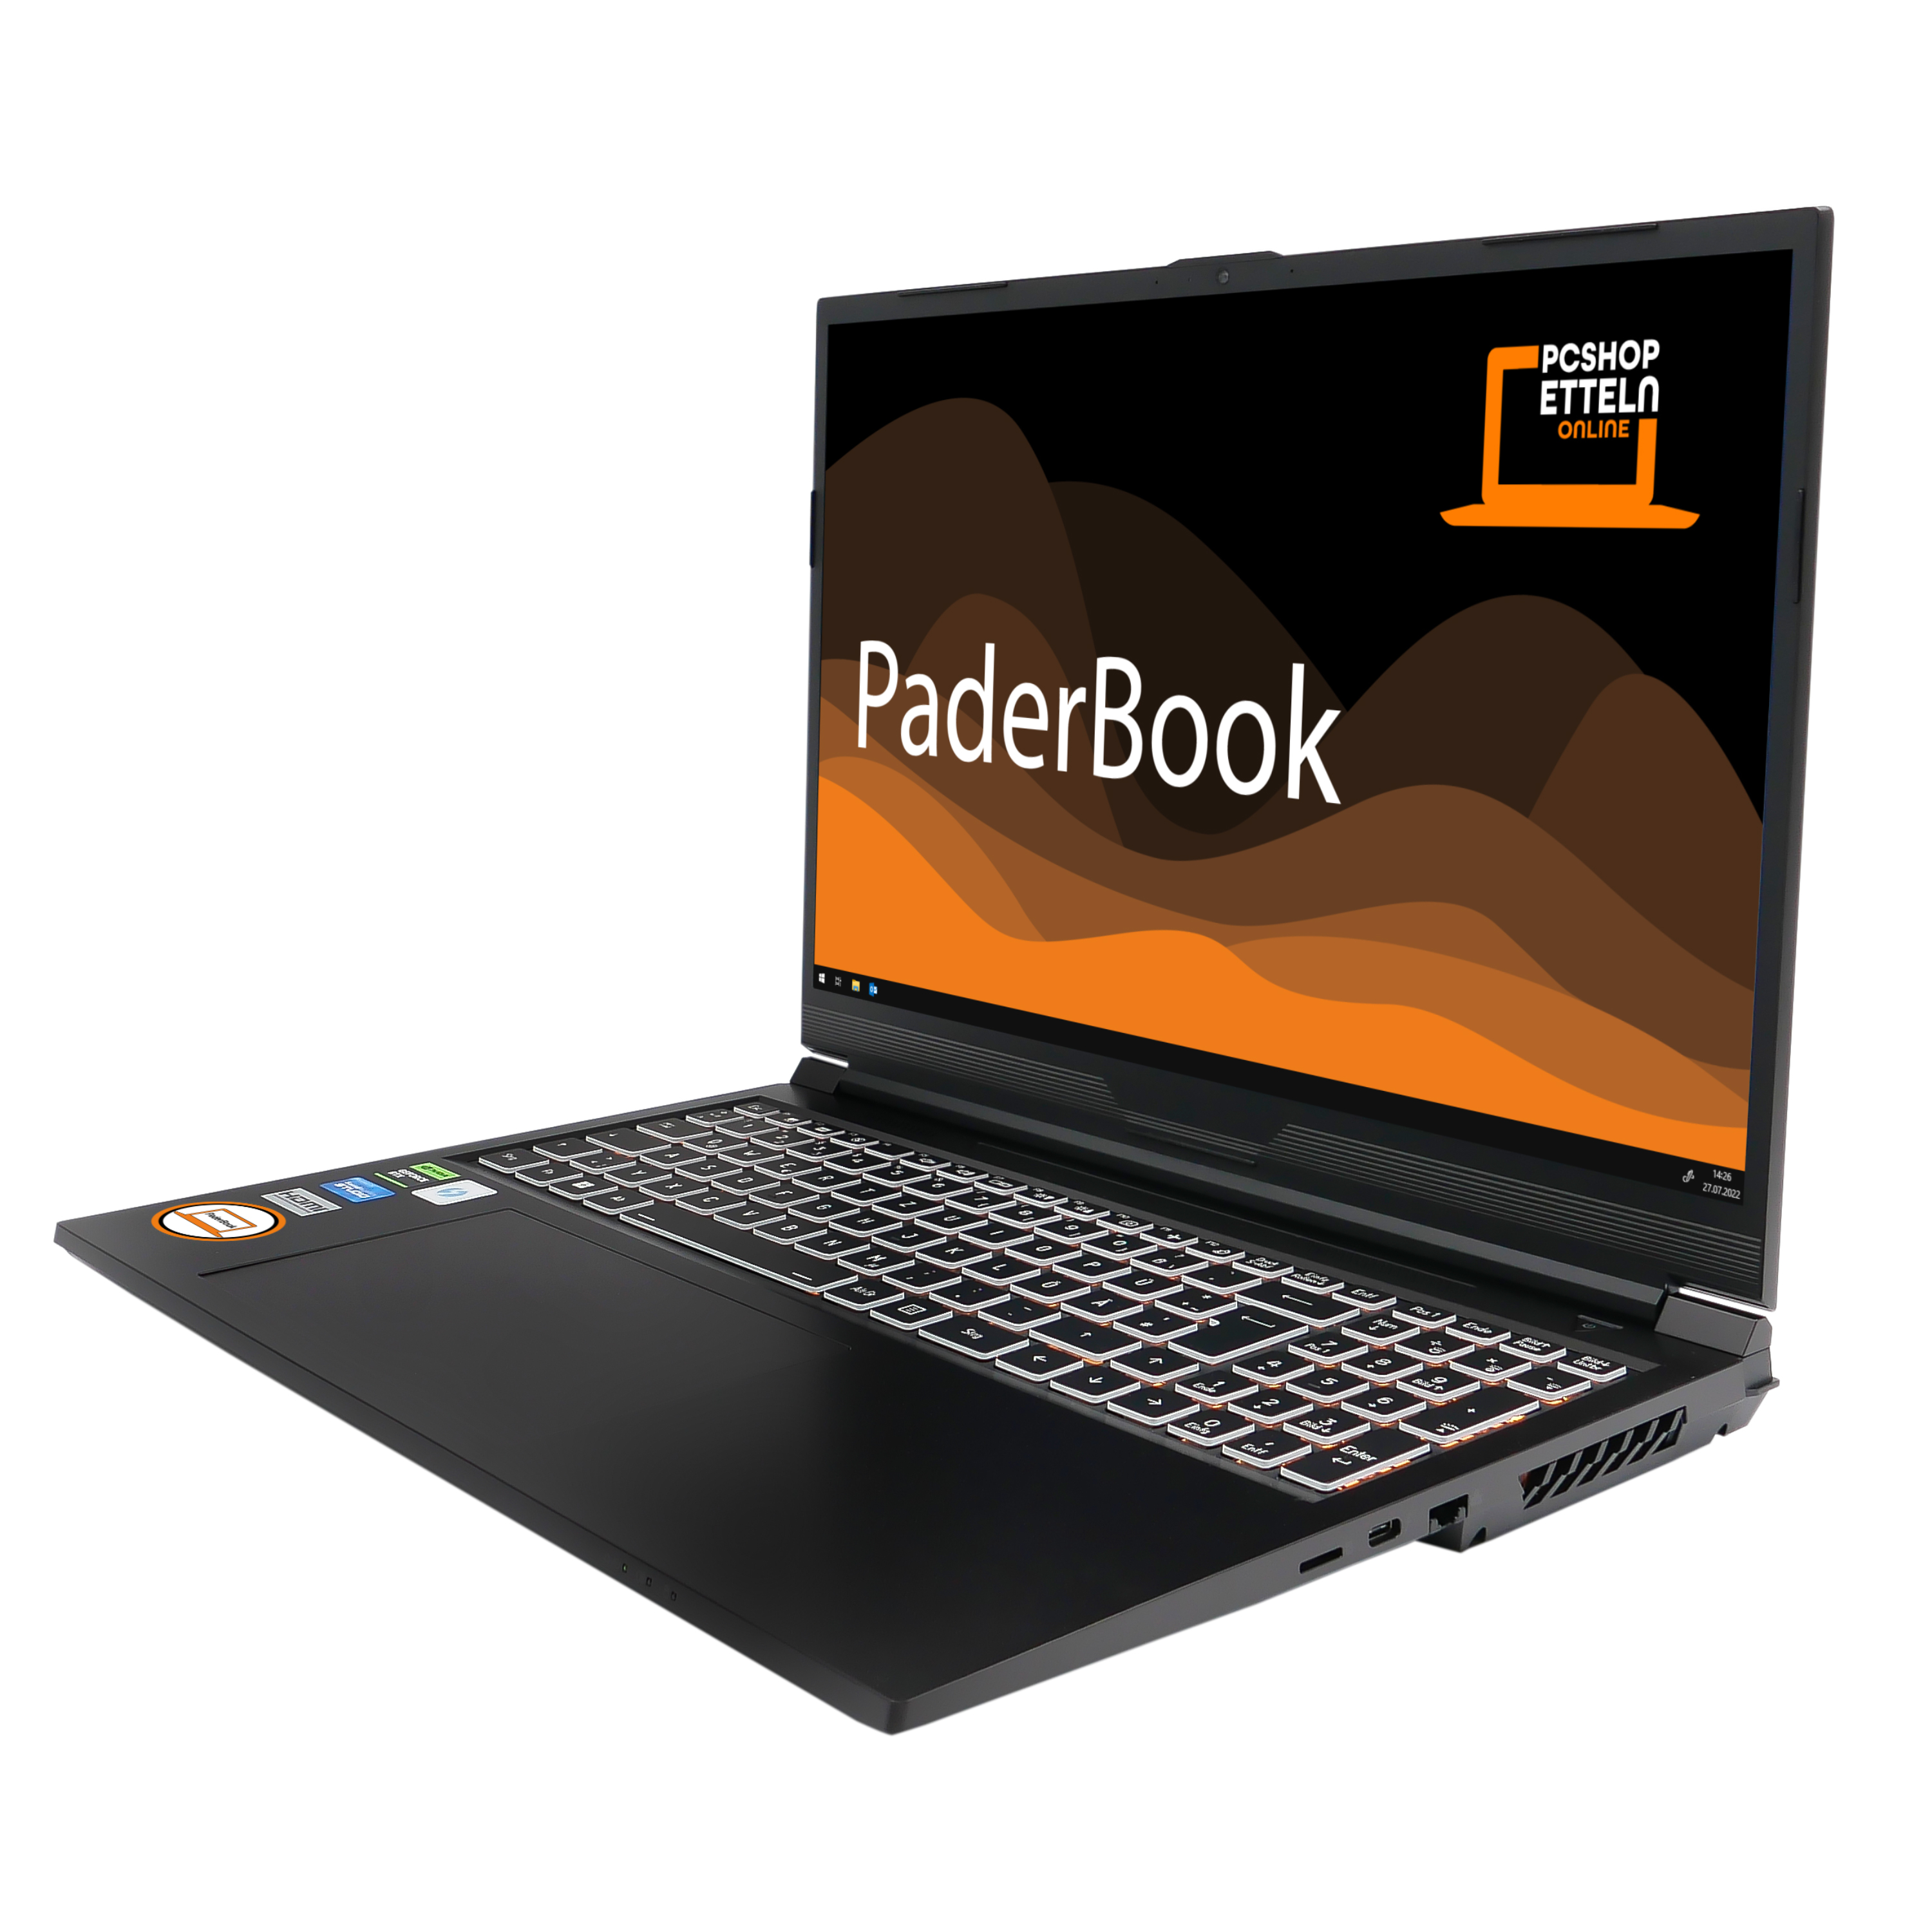 Pro, PADERBOOK SSD, Notebook fertig NVIDIA 32 installiert GB GeForce und CAD Zoll RTX GB 4060, mit Schwarz i96, 2021 16 RAM, Display, Office aktiviert, 1000